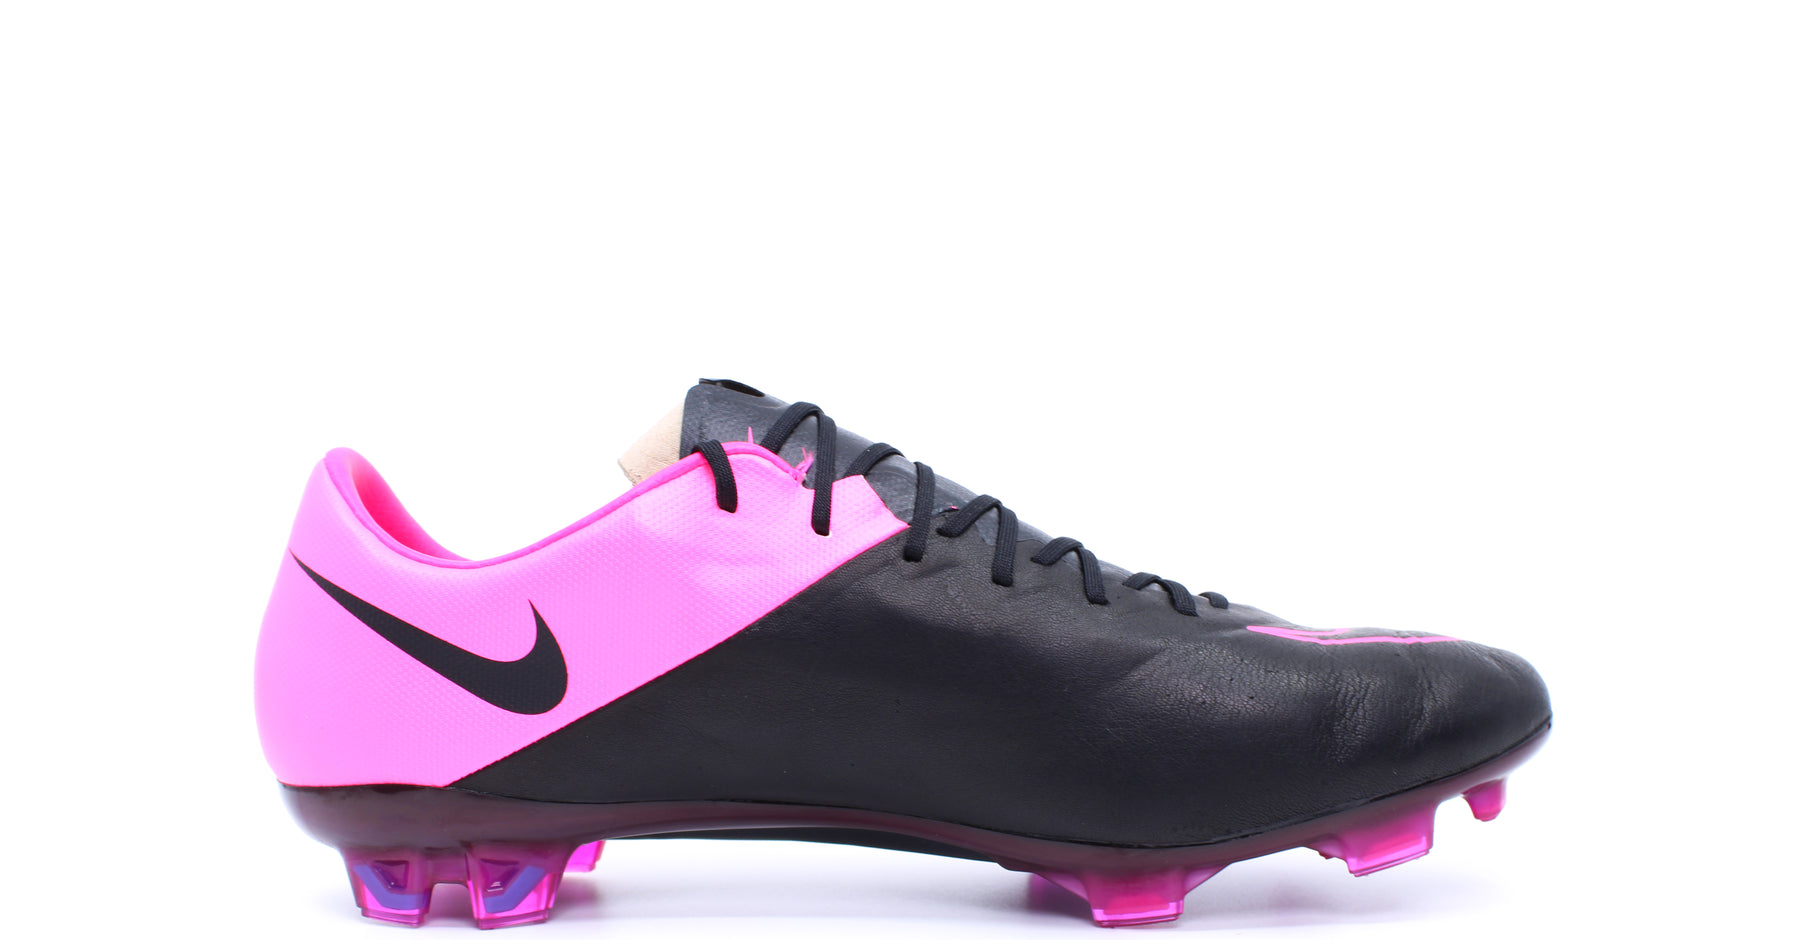 Nike Vapor 10 Leather FG Black/Hyper Pink (747565-006) – Retro Soccer